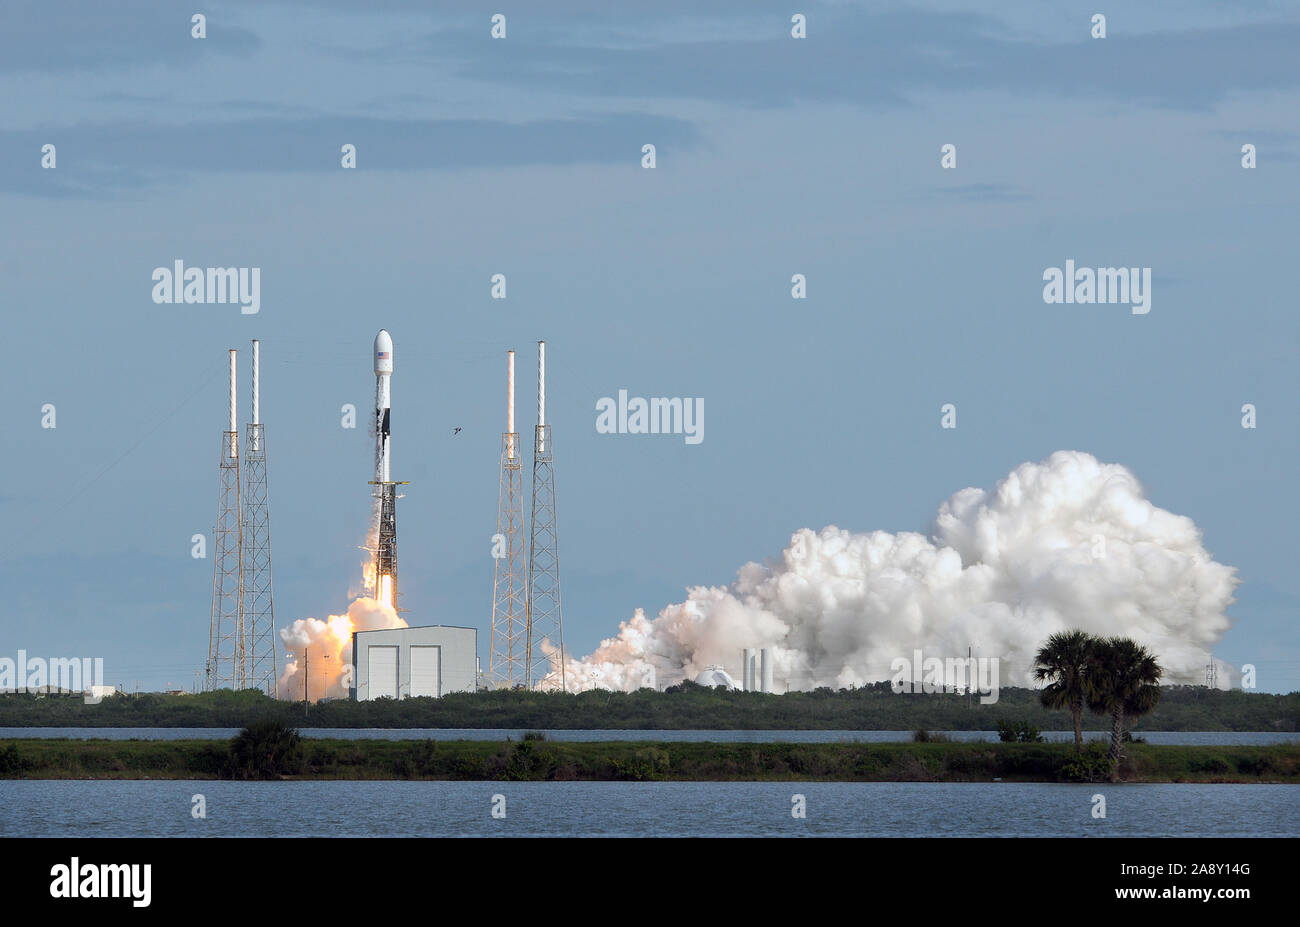 Cabo Cañaveral, Estados Unidos. 11 Nov, 2019. Un cohete SpaceX Falcon 9 despega desde Cabo Cañaveral de la Fuerza Aérea estación llevando 60 Starlink satélites. El Starlink constelación se compondría de miles de satélites en todo el mundo diseñado para ofrecer servicio de internet de alta velocidad. Crédito: Sopa de imágenes limitado/Alamy Live News Foto de stock